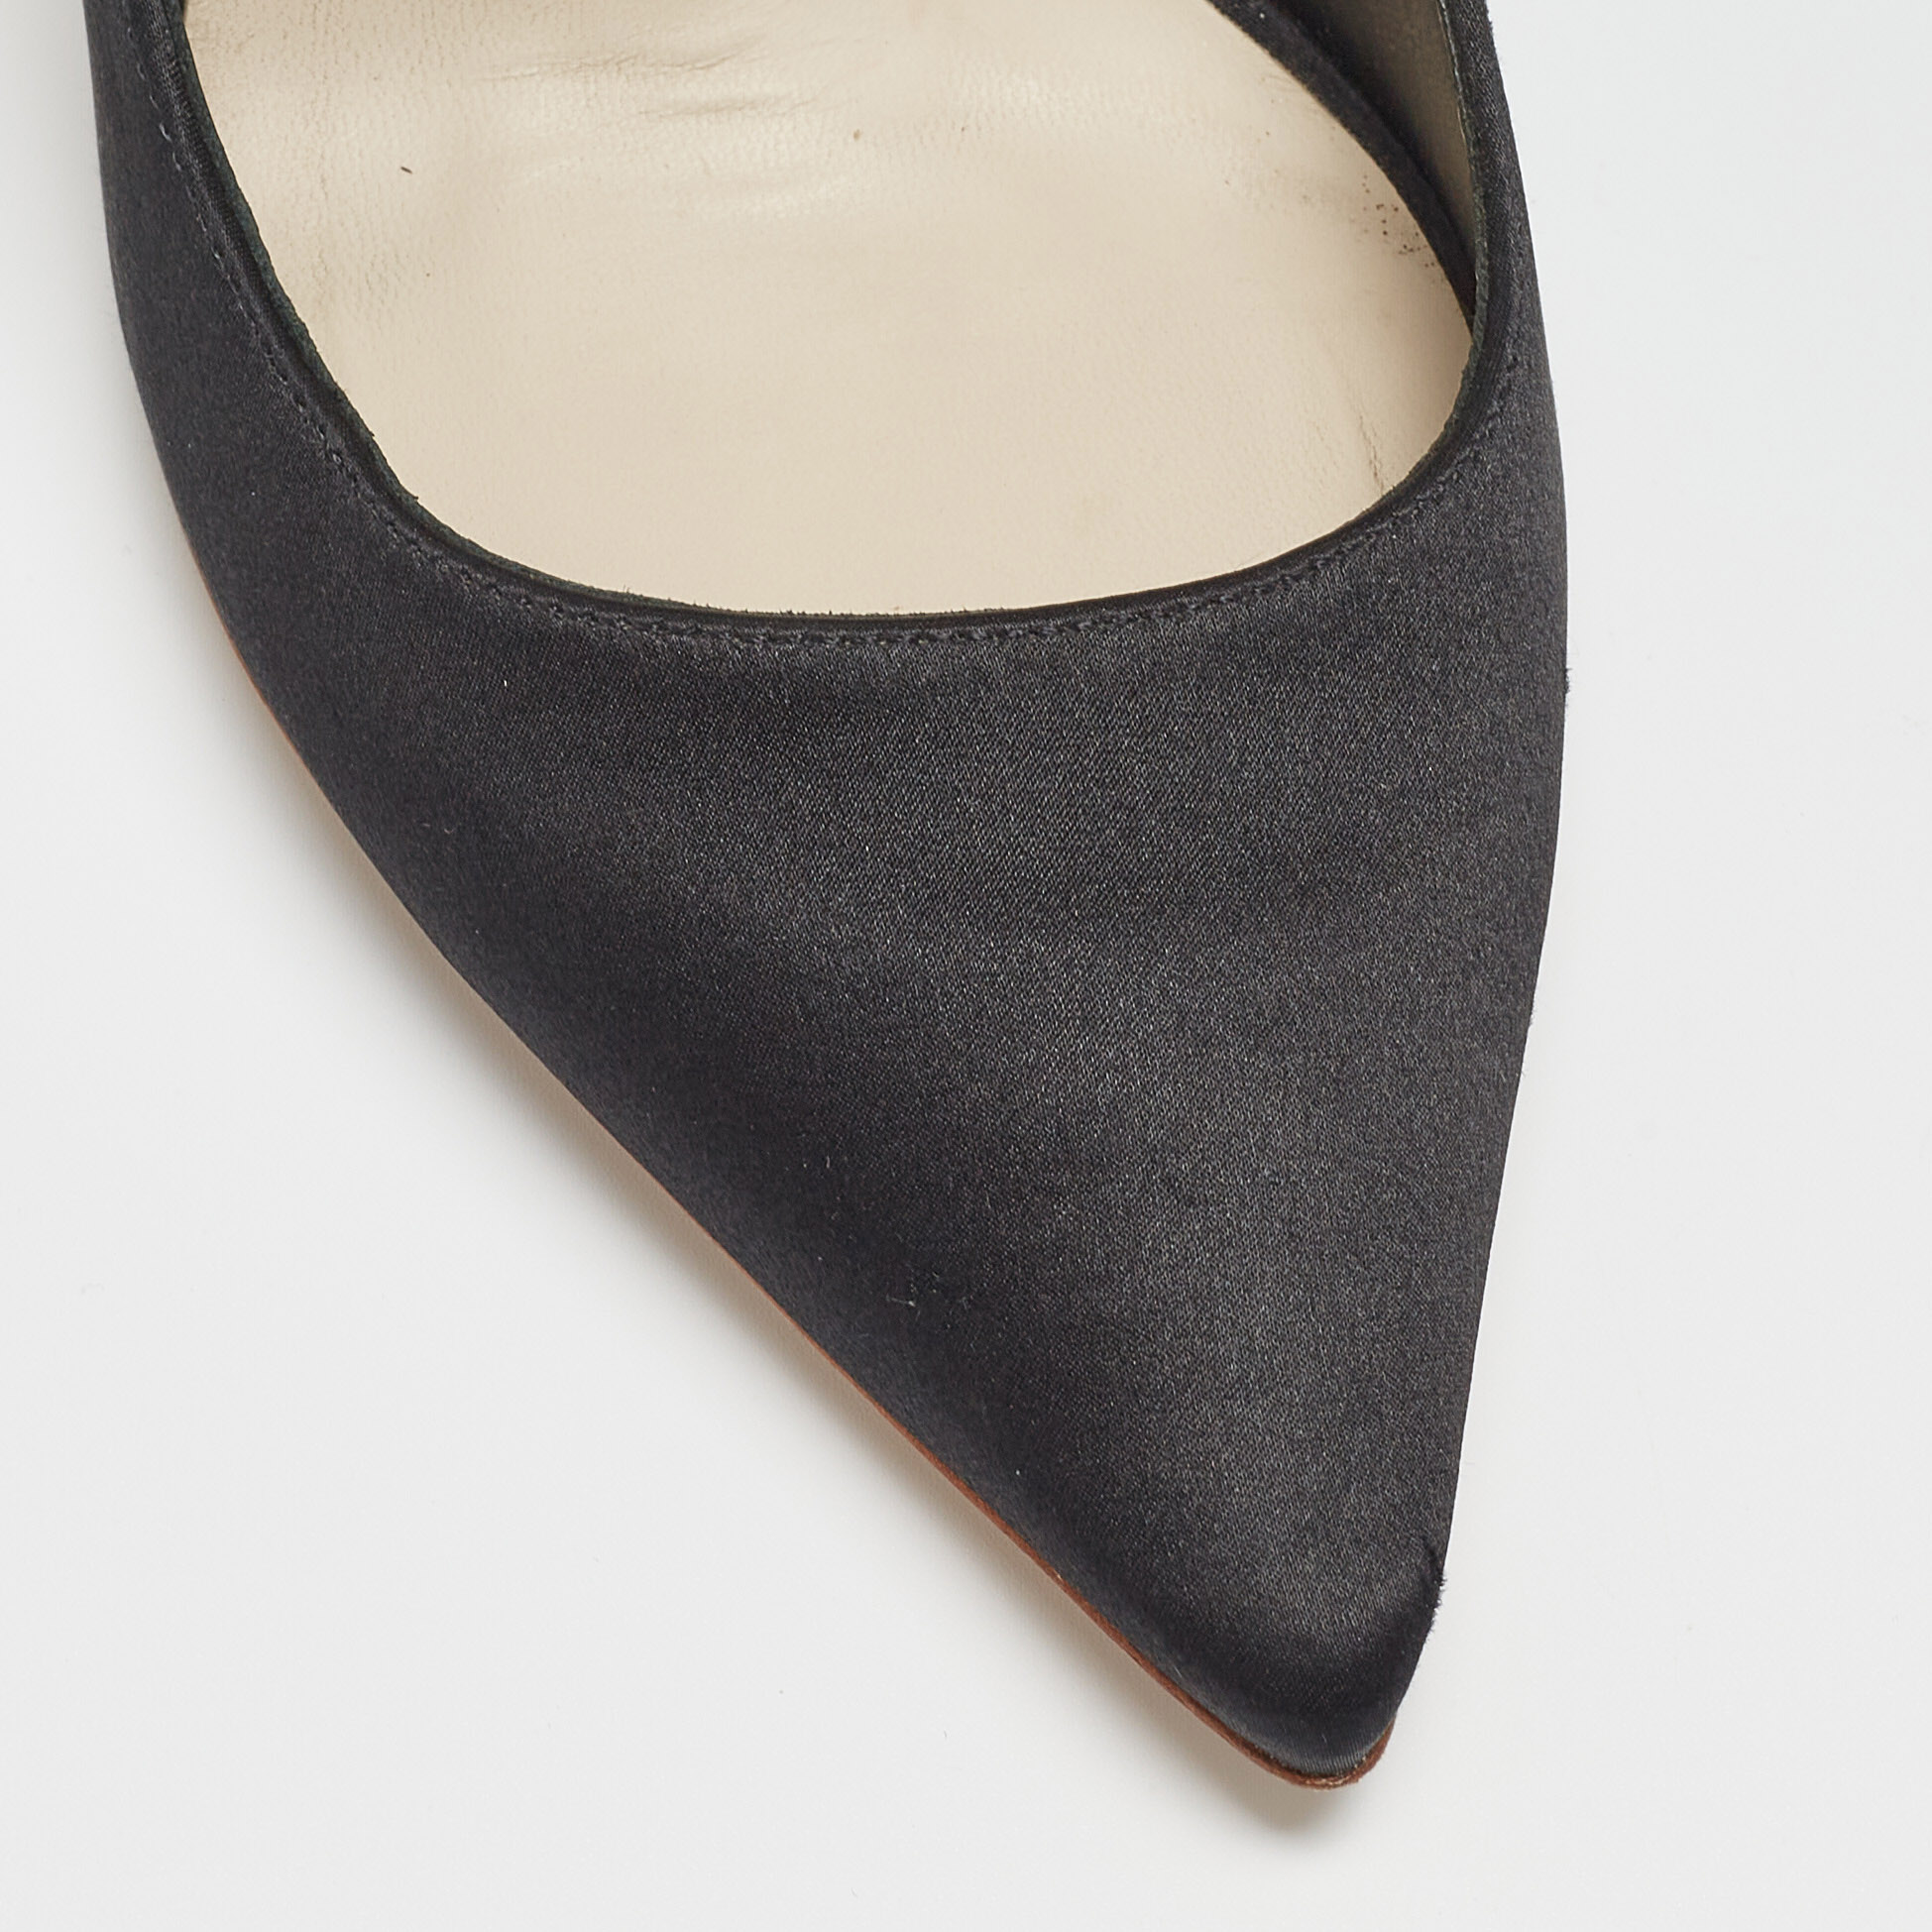 Sophia Webster Black Satin Coco Crystal Embellished Pointed Toe Pumps Size 39.5